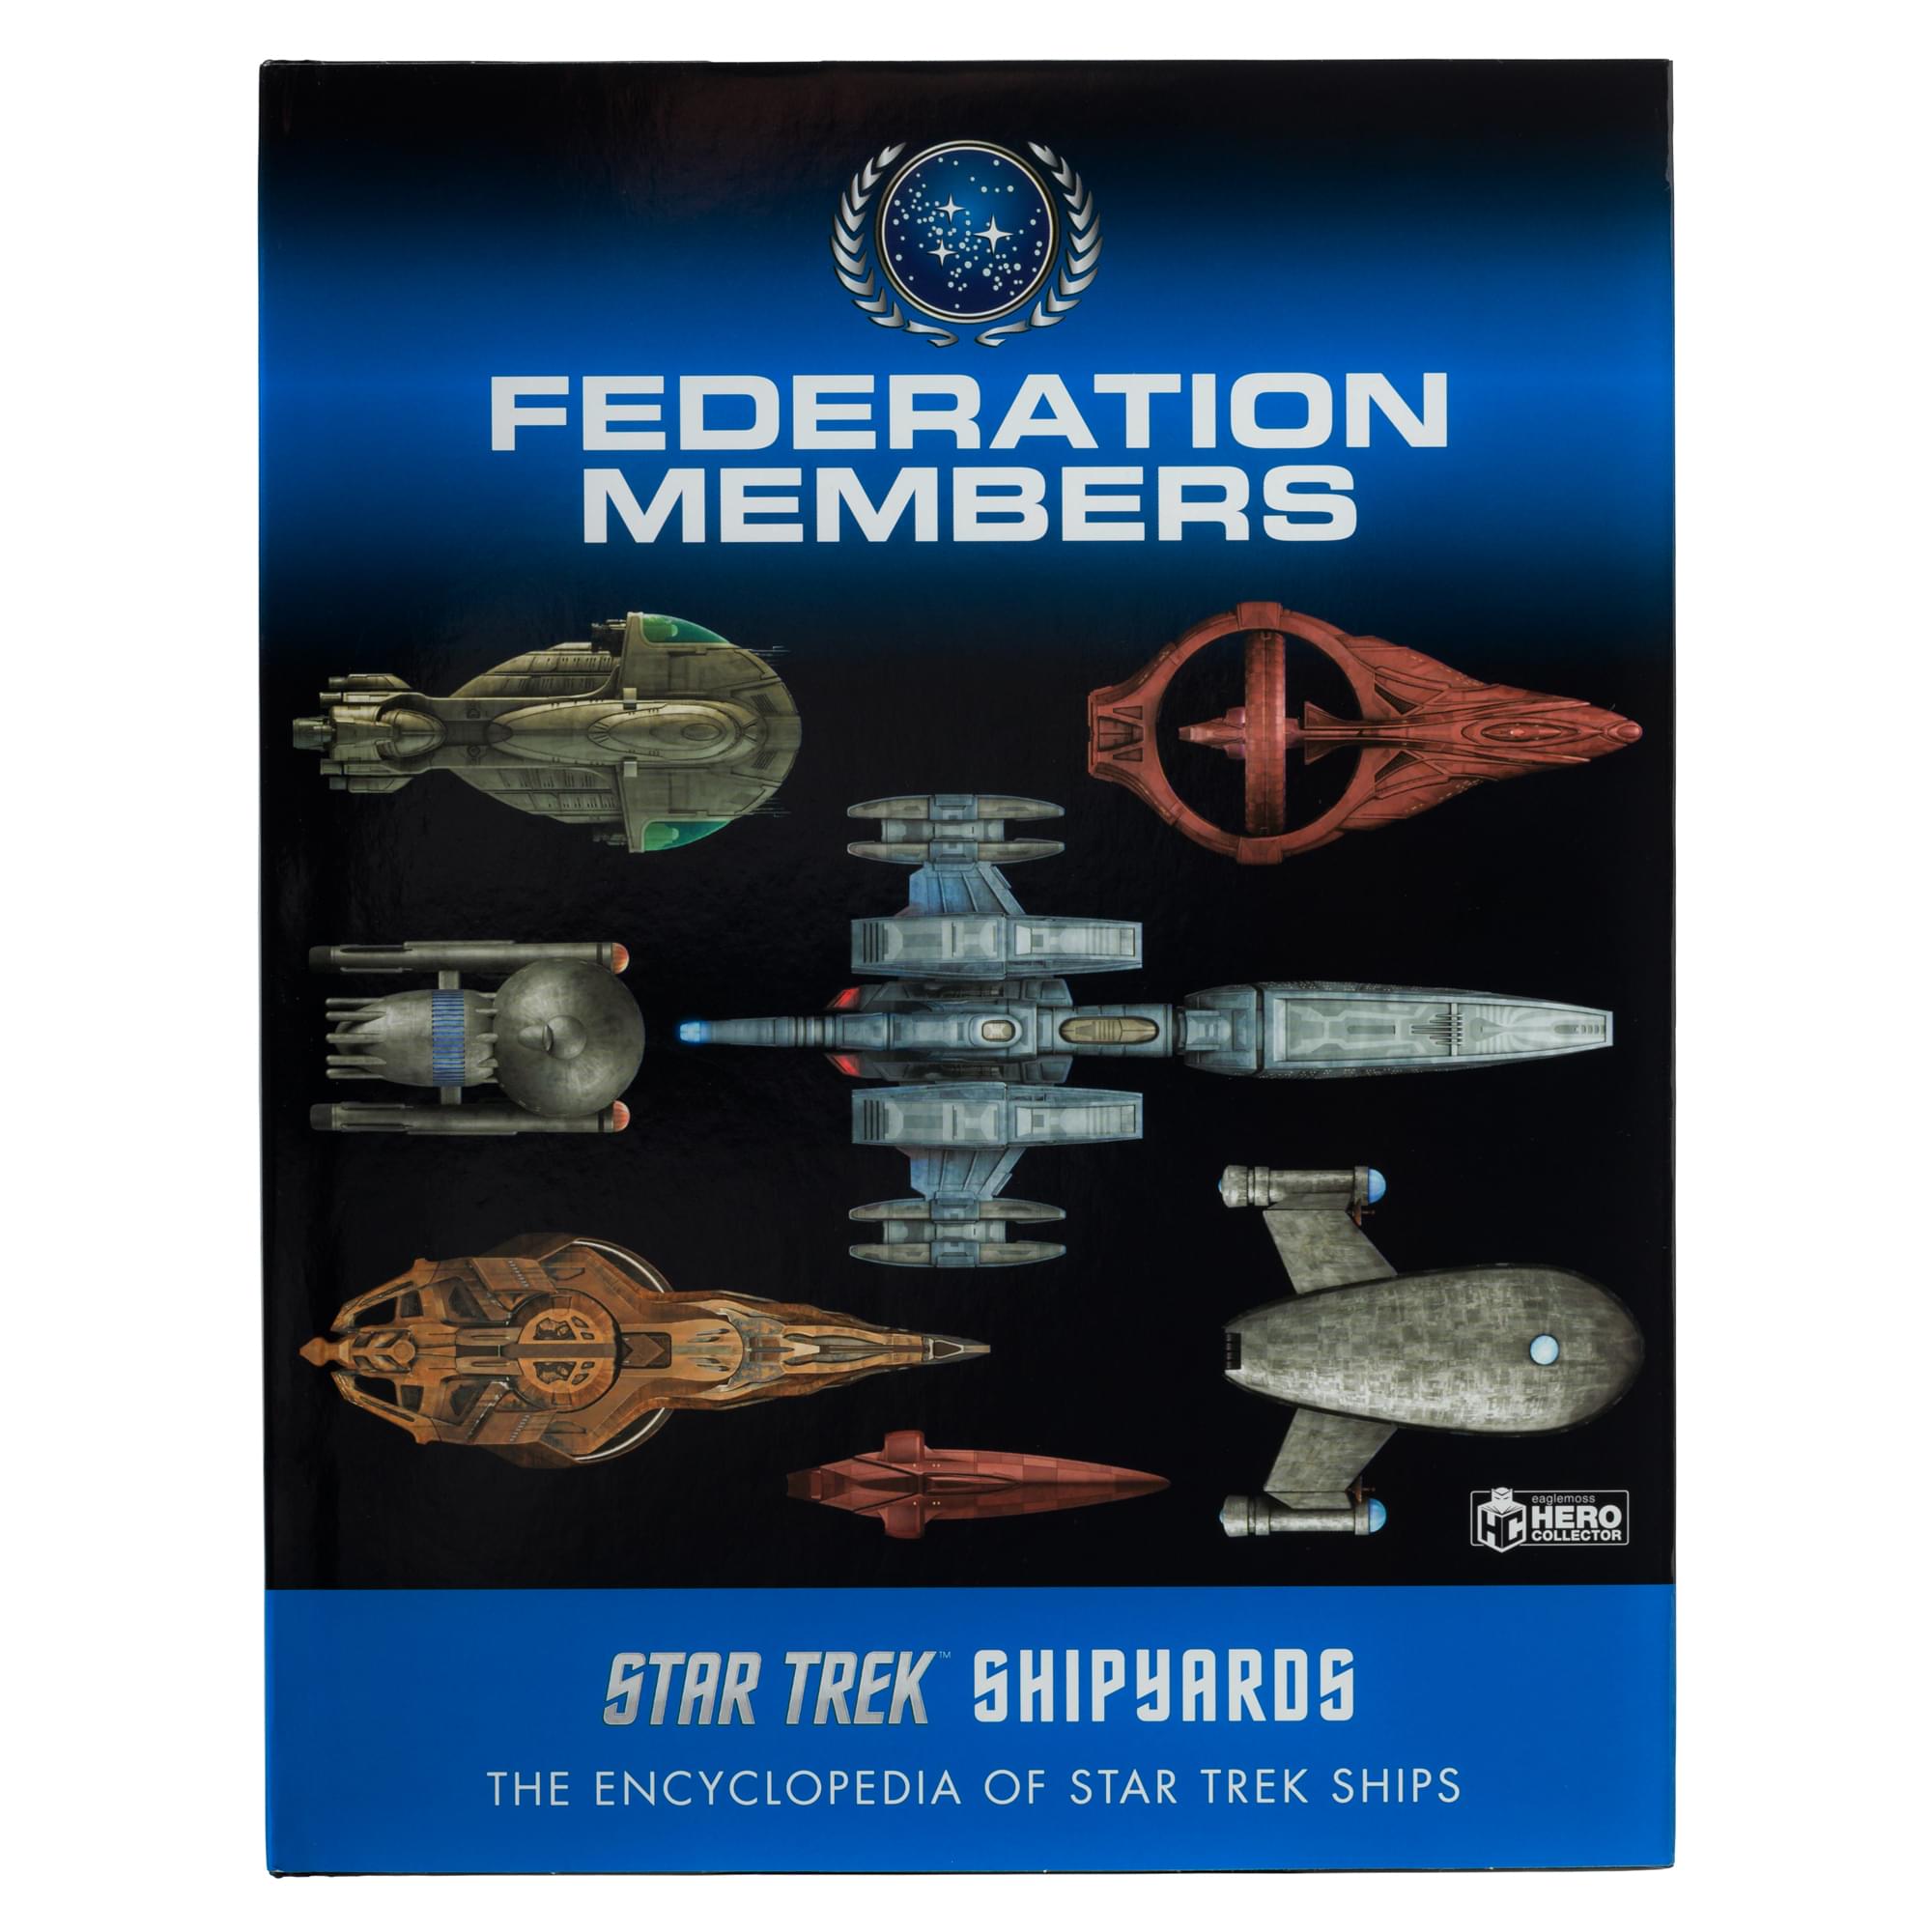 Star Trek Shipyards Book , Federation Members